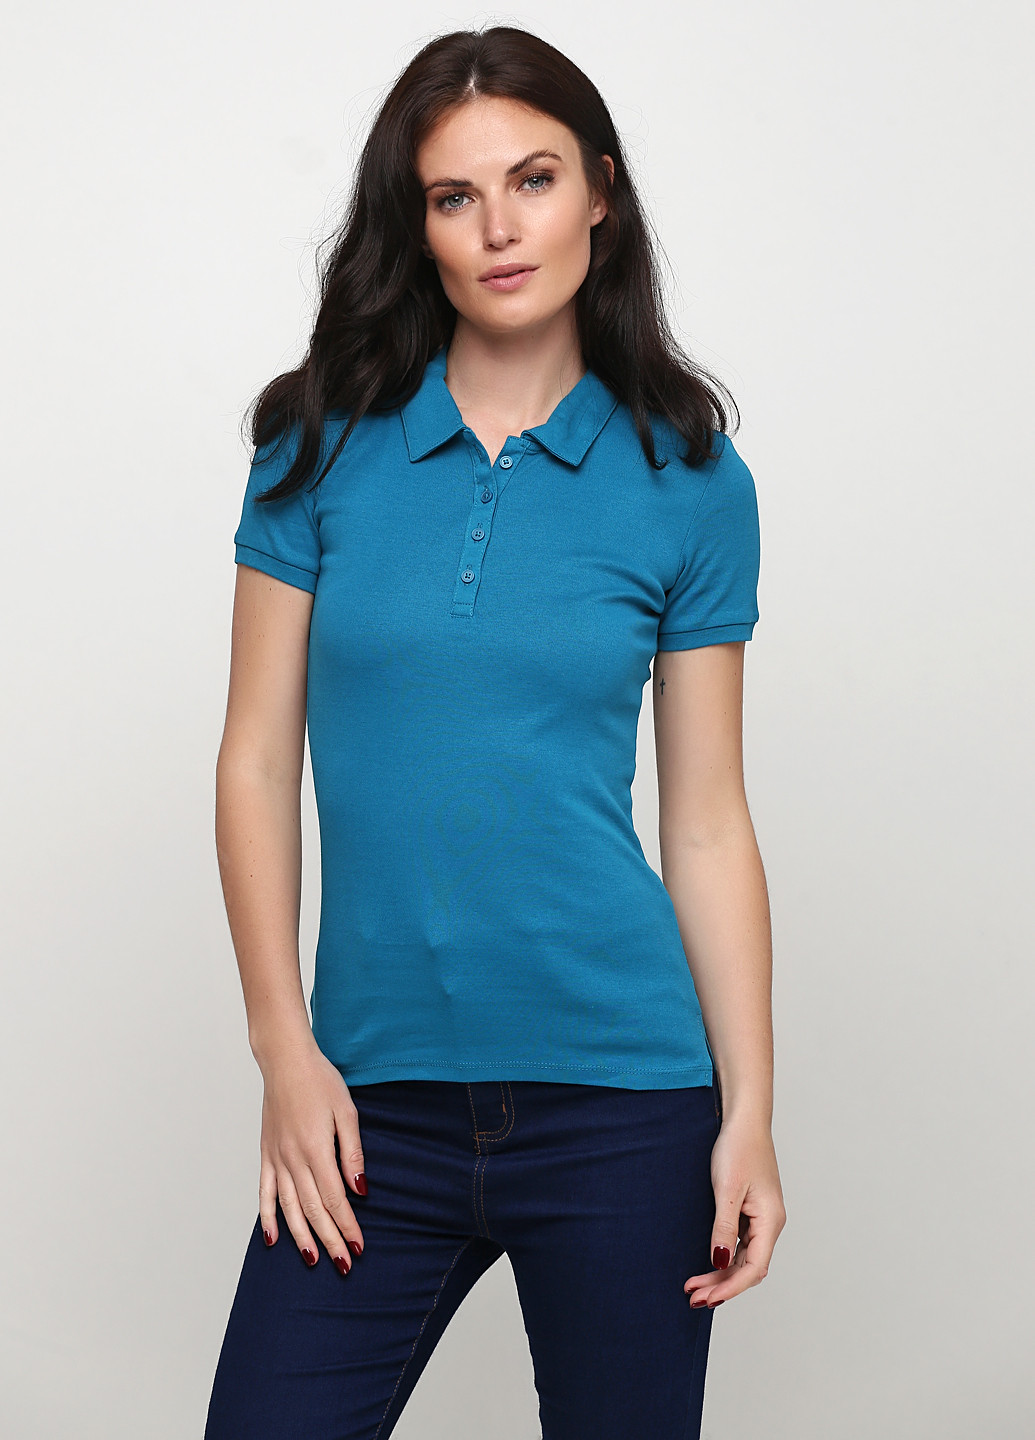 Цветная женская футболка-поло (2 шт.) C&A однотонная